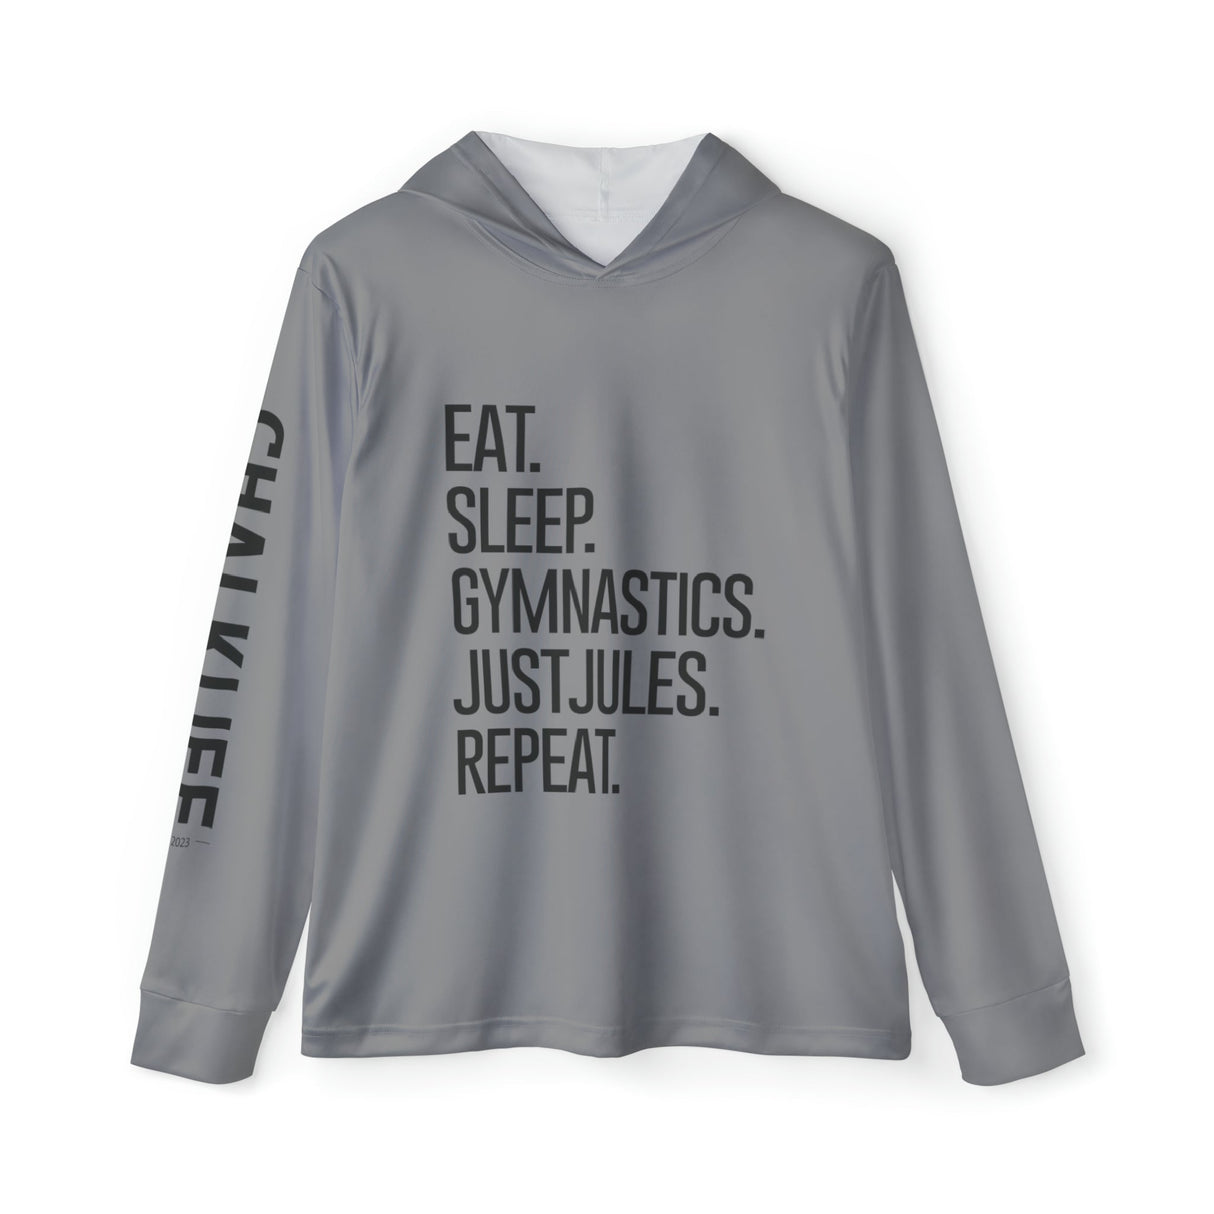 JUSTJULES - Eat. Sleep. Gymnastics. JustJules. Repeat. Performance Hoodie - Chalklife, LLC